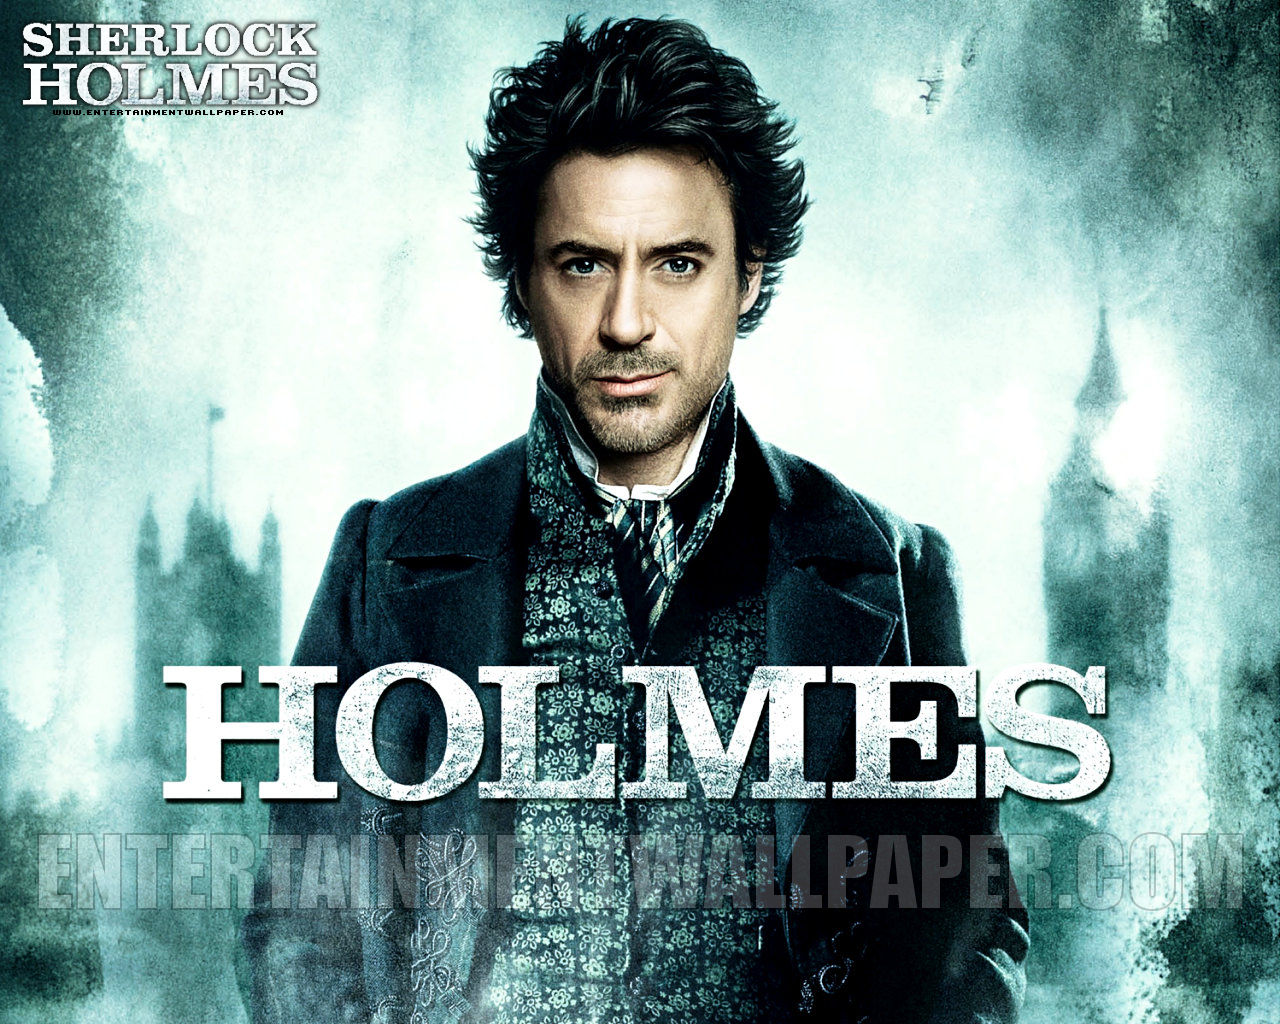 Holmes - SHERLOCK HOLMES (2009 Film) Wallpaper (23934645) - Fanpop